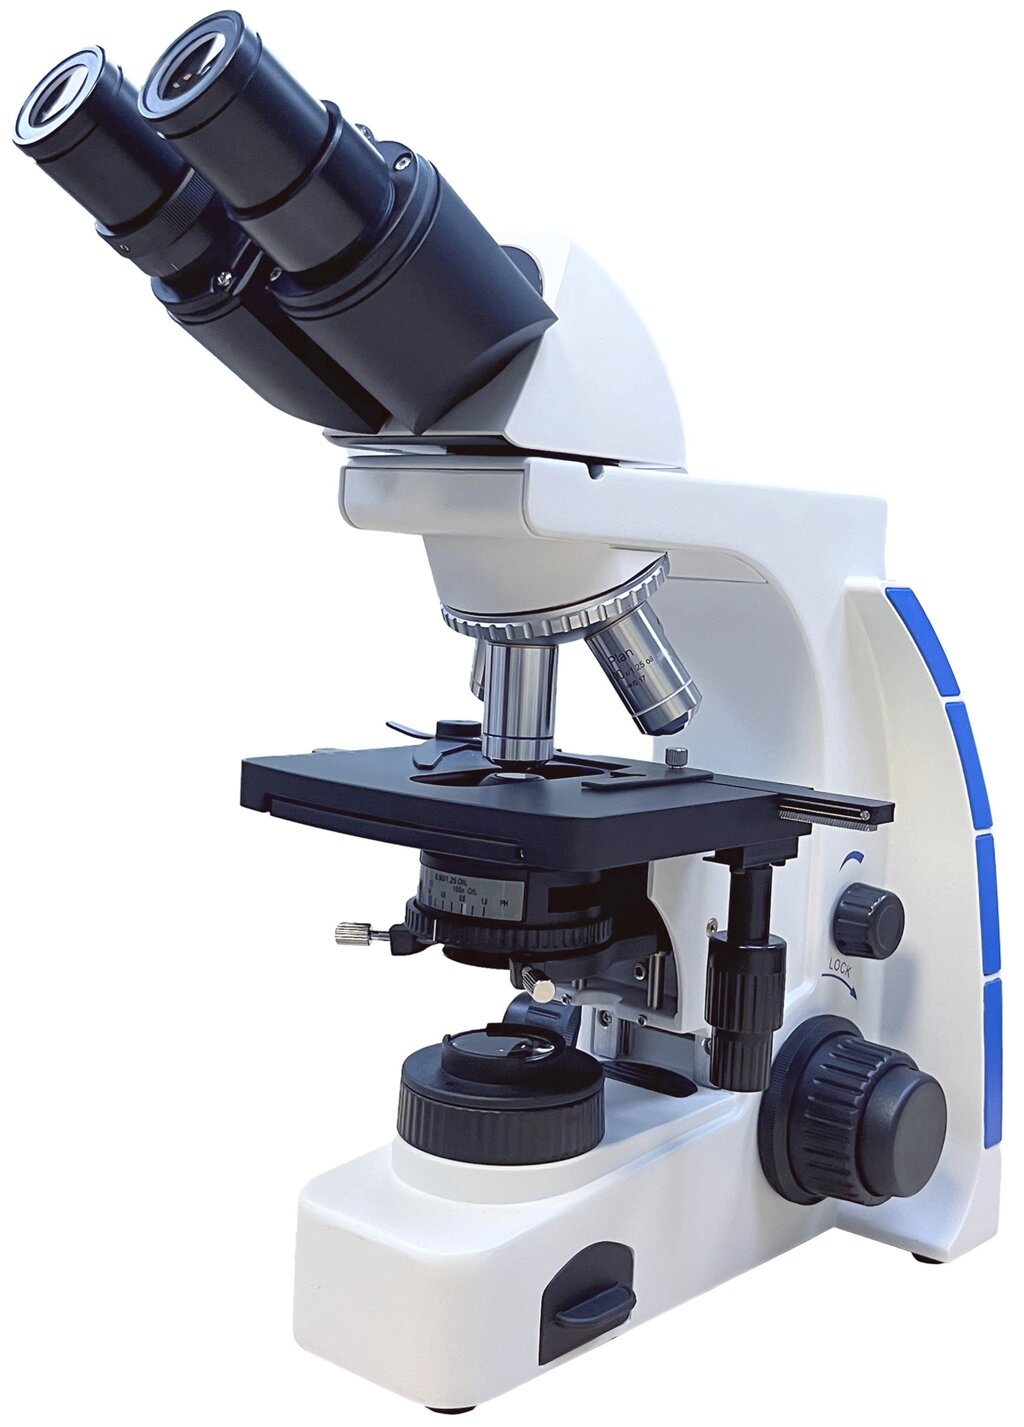 Микроскоп лабораторный Levenhuk MED P1000KLED-2 от компании ООО "АССЕРВИС" лабораторное оборудование и весы по низким ценам. - фото 1